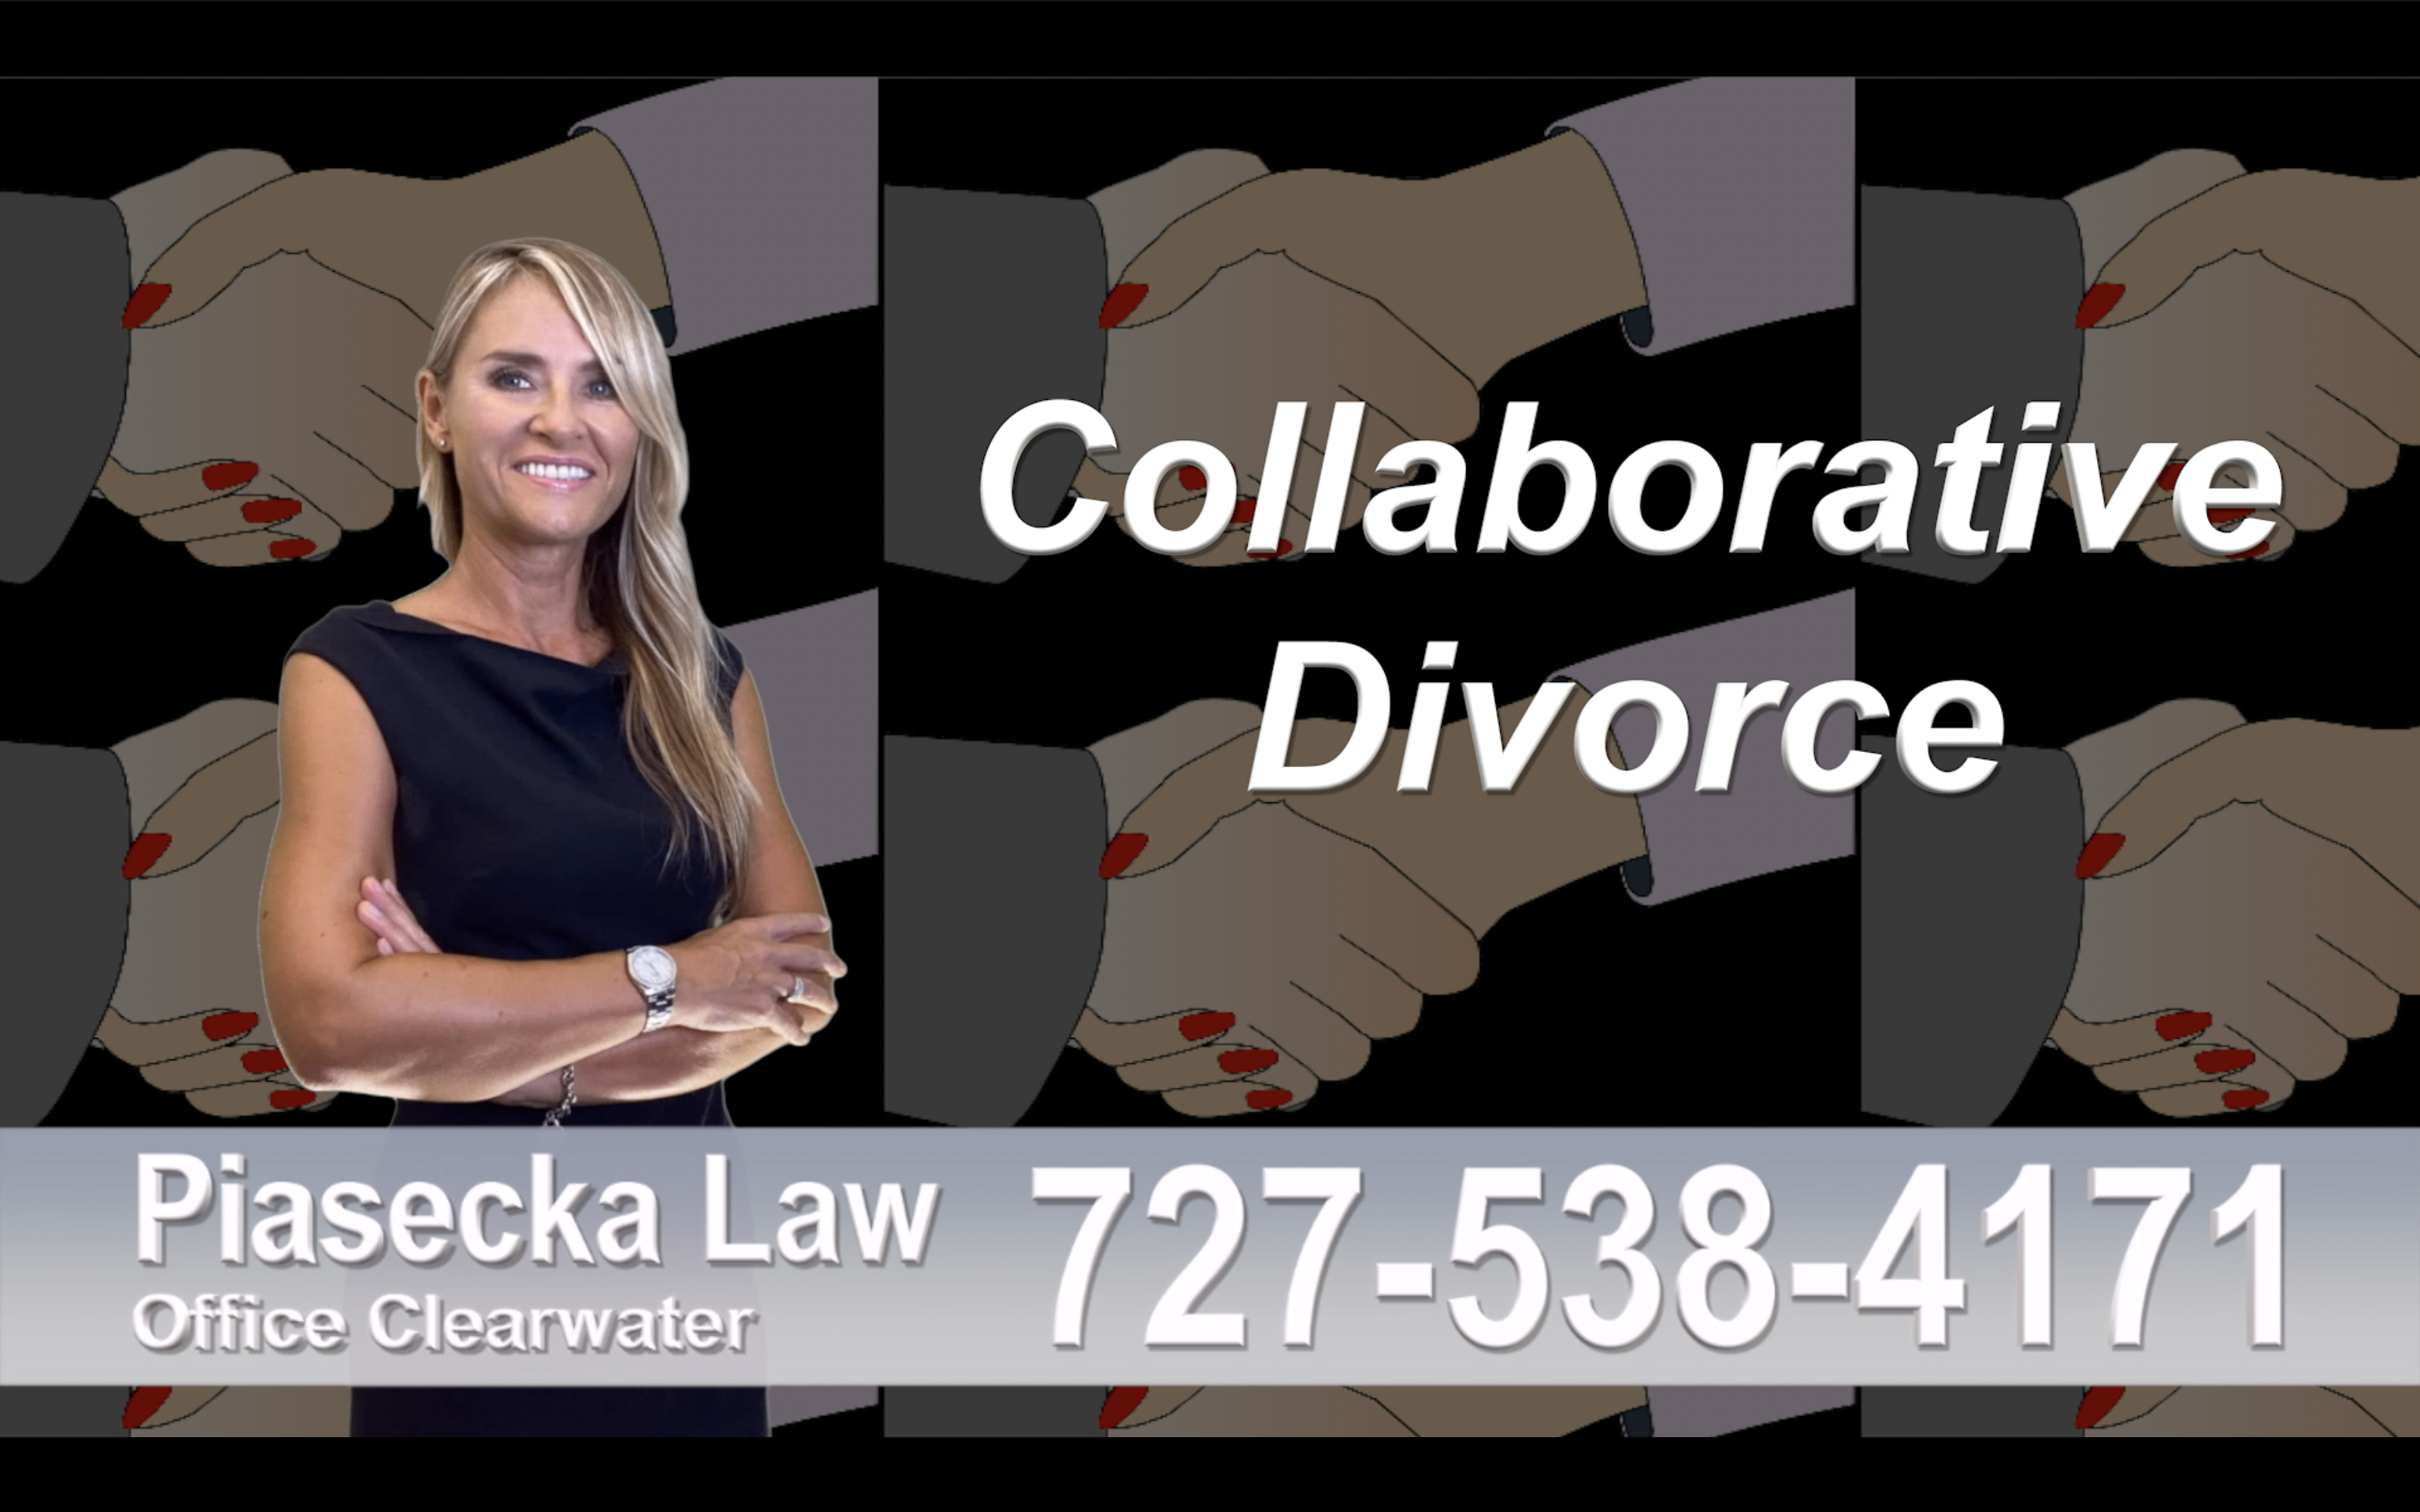 New Port Richey Collaborative, Divorce, Attorney, Agnieszka, Piasecka, Prawnik, Rozwodowy, Rozwód, Adwokat, Najlepszy, Best, divorce, attorney